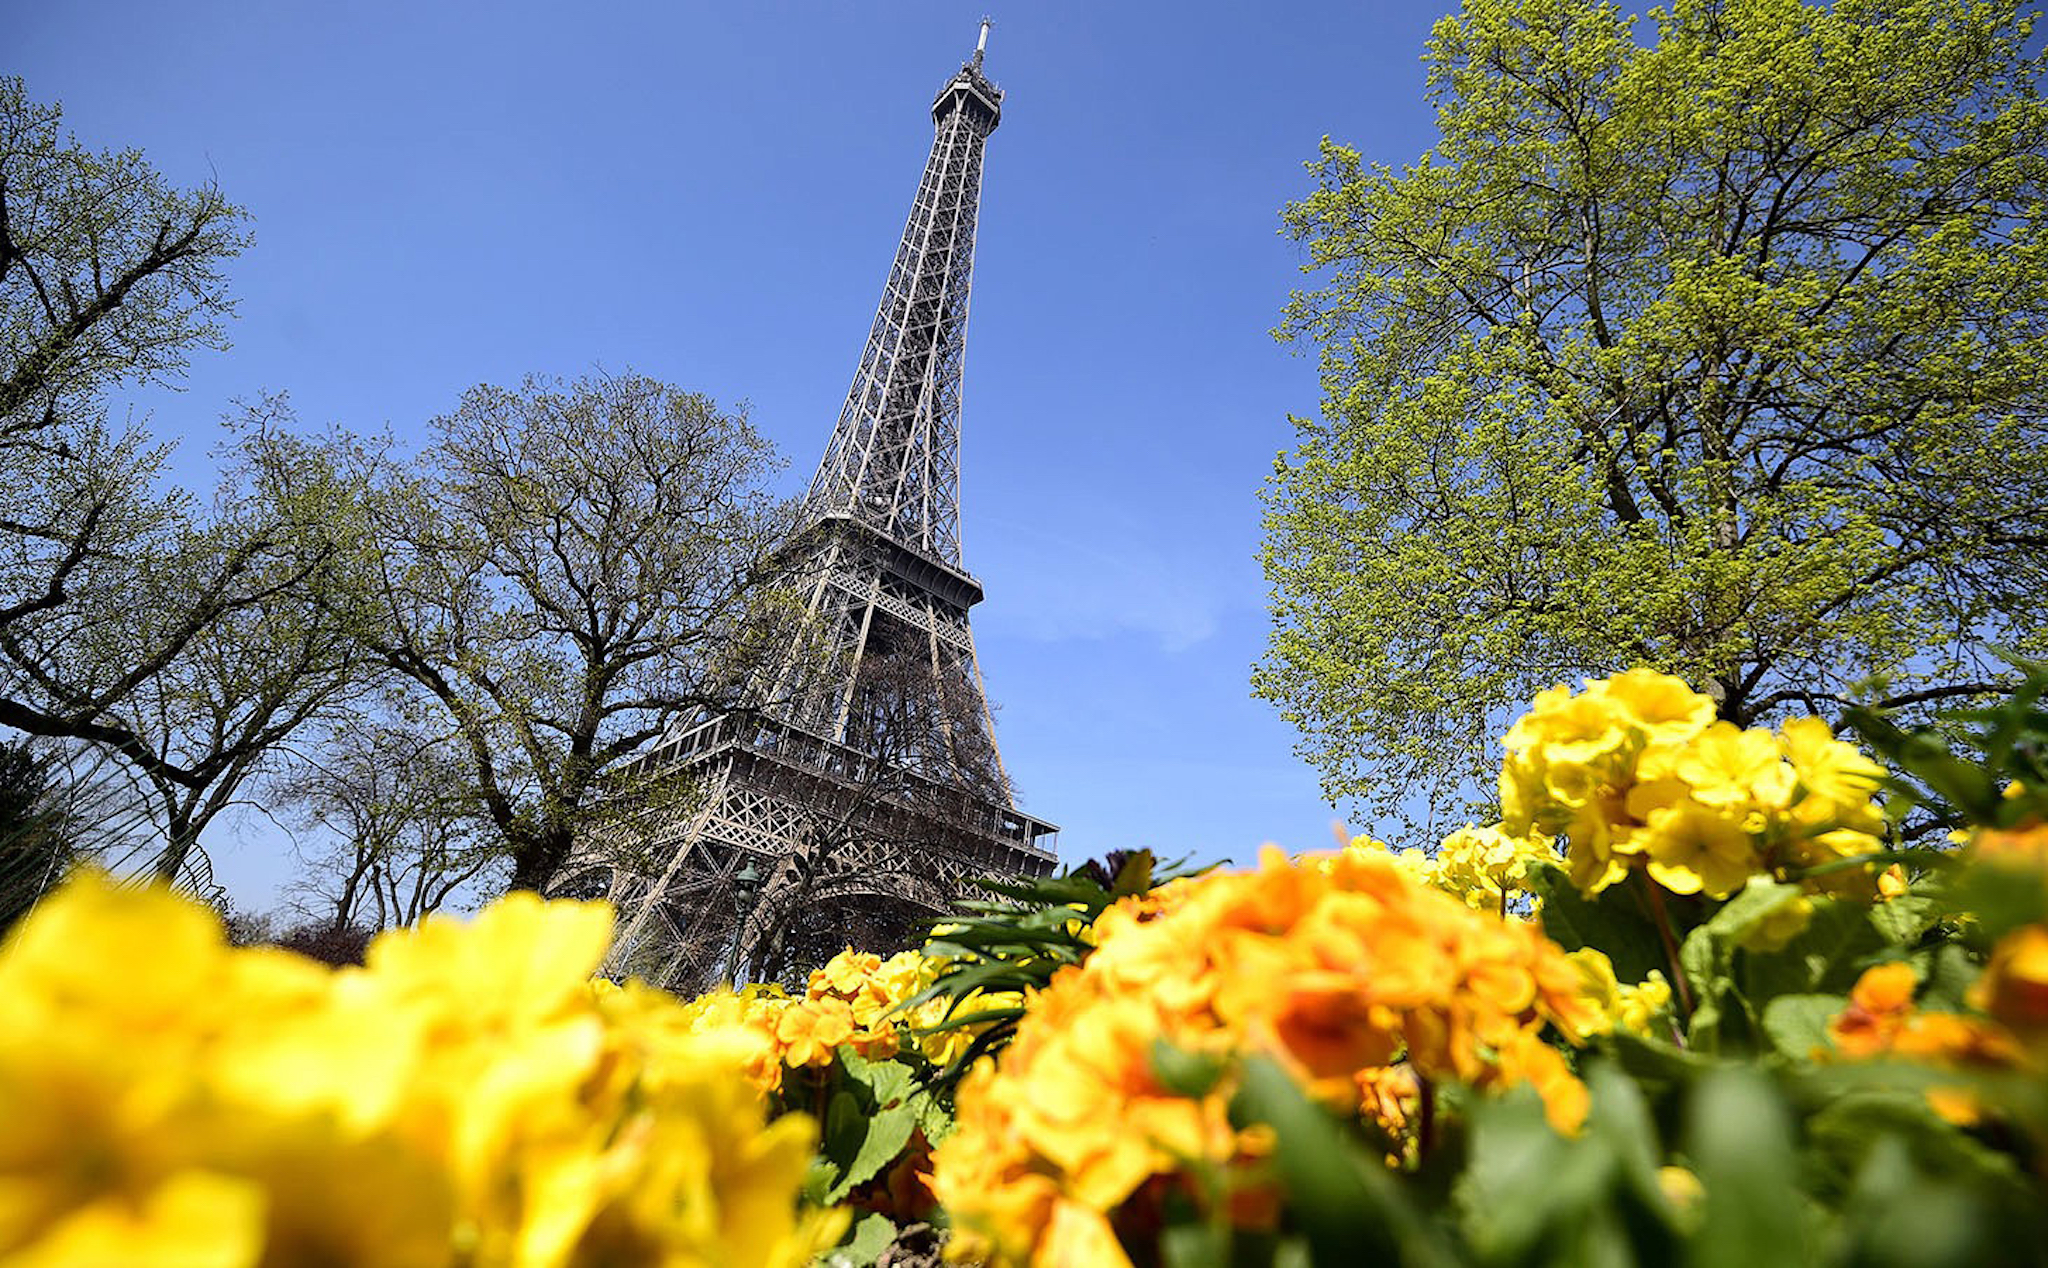 Tháp Eiffel đang xuống cấp nghiêm trọng